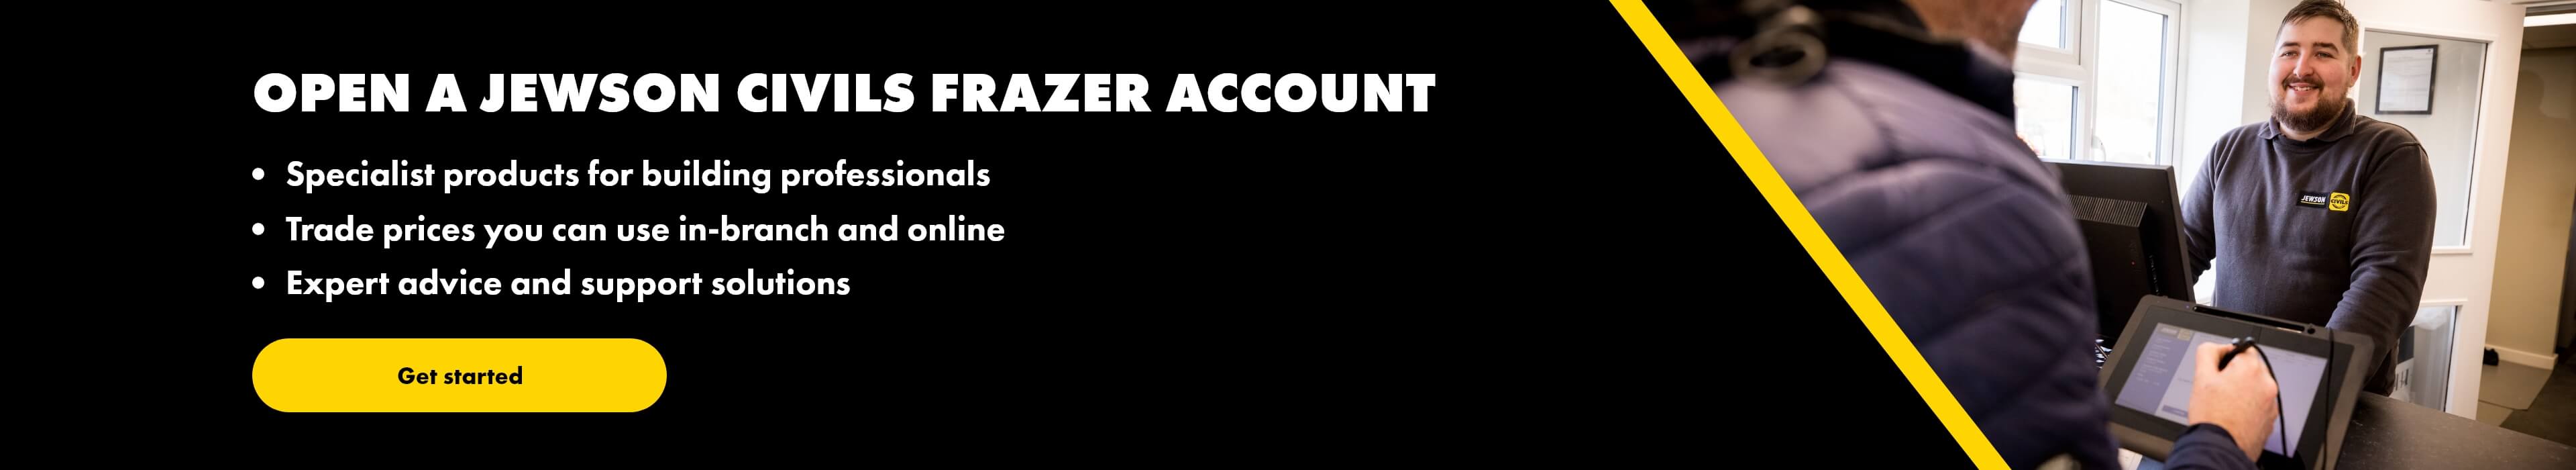 Open a Jewson Civils Frazer account